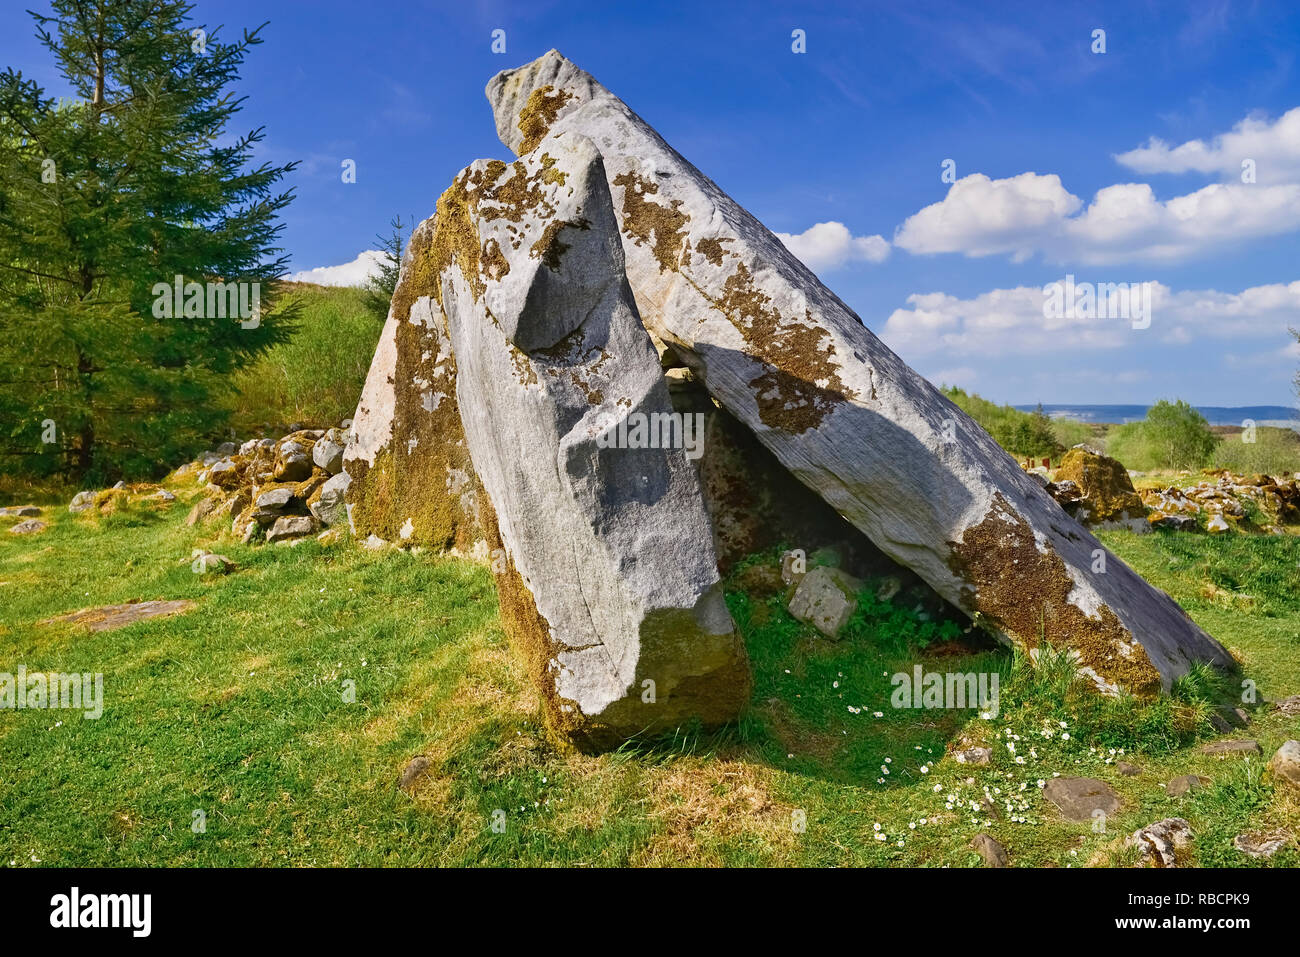 Irland, County Cavan, Cavan Burren Park, das Kalb Haus Dolmen. Stockfoto